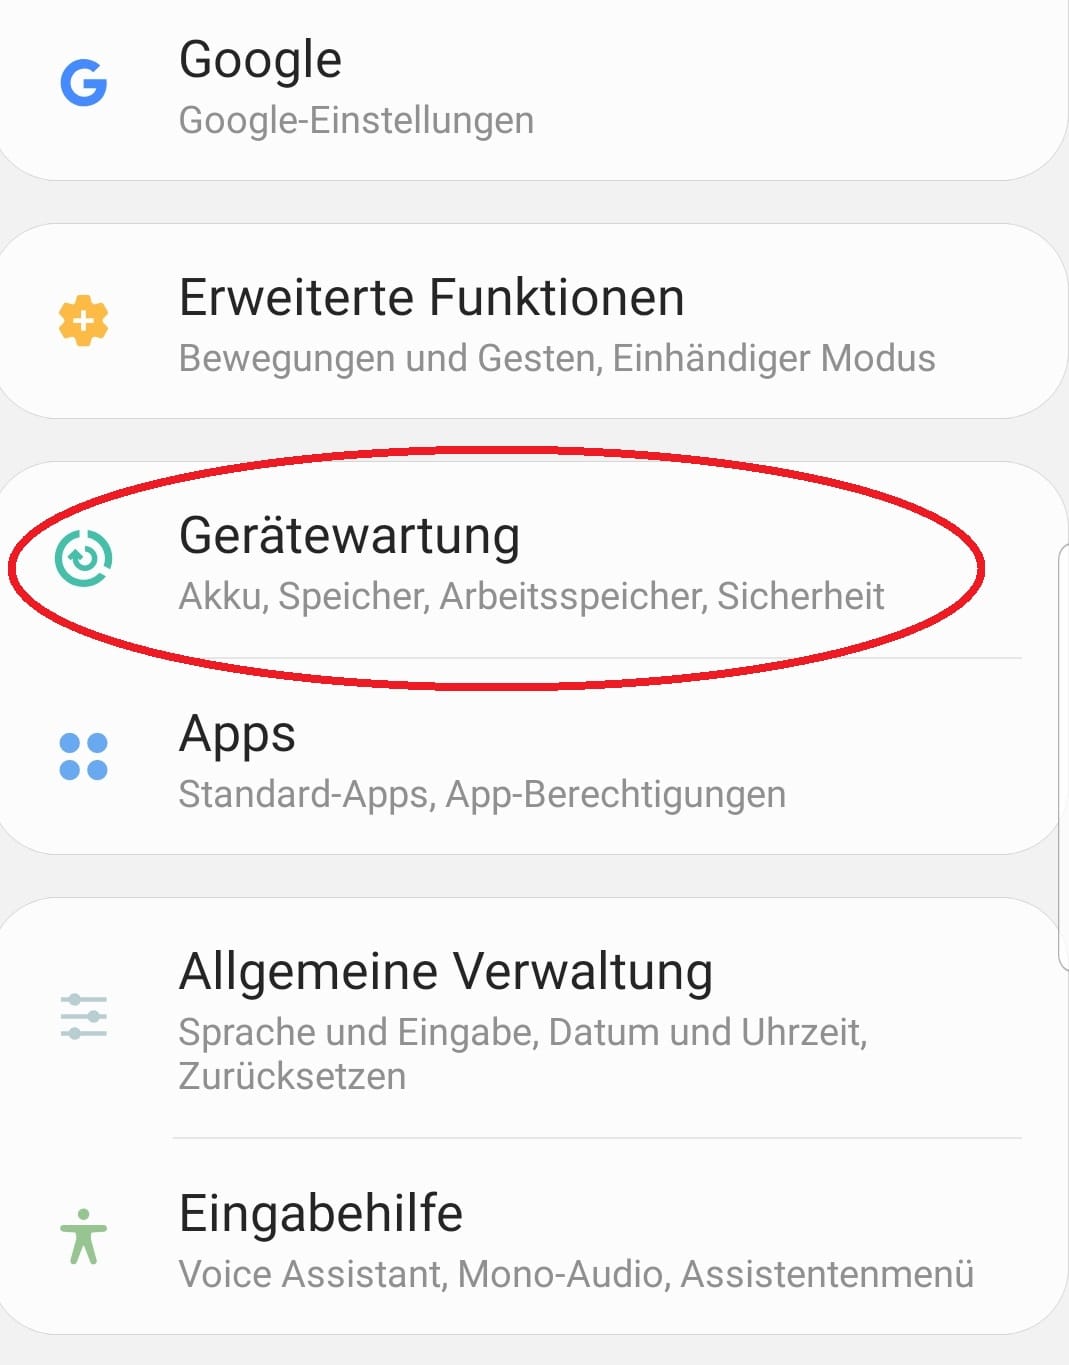 Ab Android 9.0 ist es nicht mehr möglich, den Cache aller Apps auf einmal zu leeren. Eventuell bietet Ihnen das Gerät die Möglichkeit, den Speicher zu bereinigen. Dabei werden auch zwischengespeicherte Daten gelöscht. Das ist bei Samsung-Geräten der Fall. Öffnen Sie dafür die Geräteeinstellungen und klicken Sie auf "Gerätewartung" ...